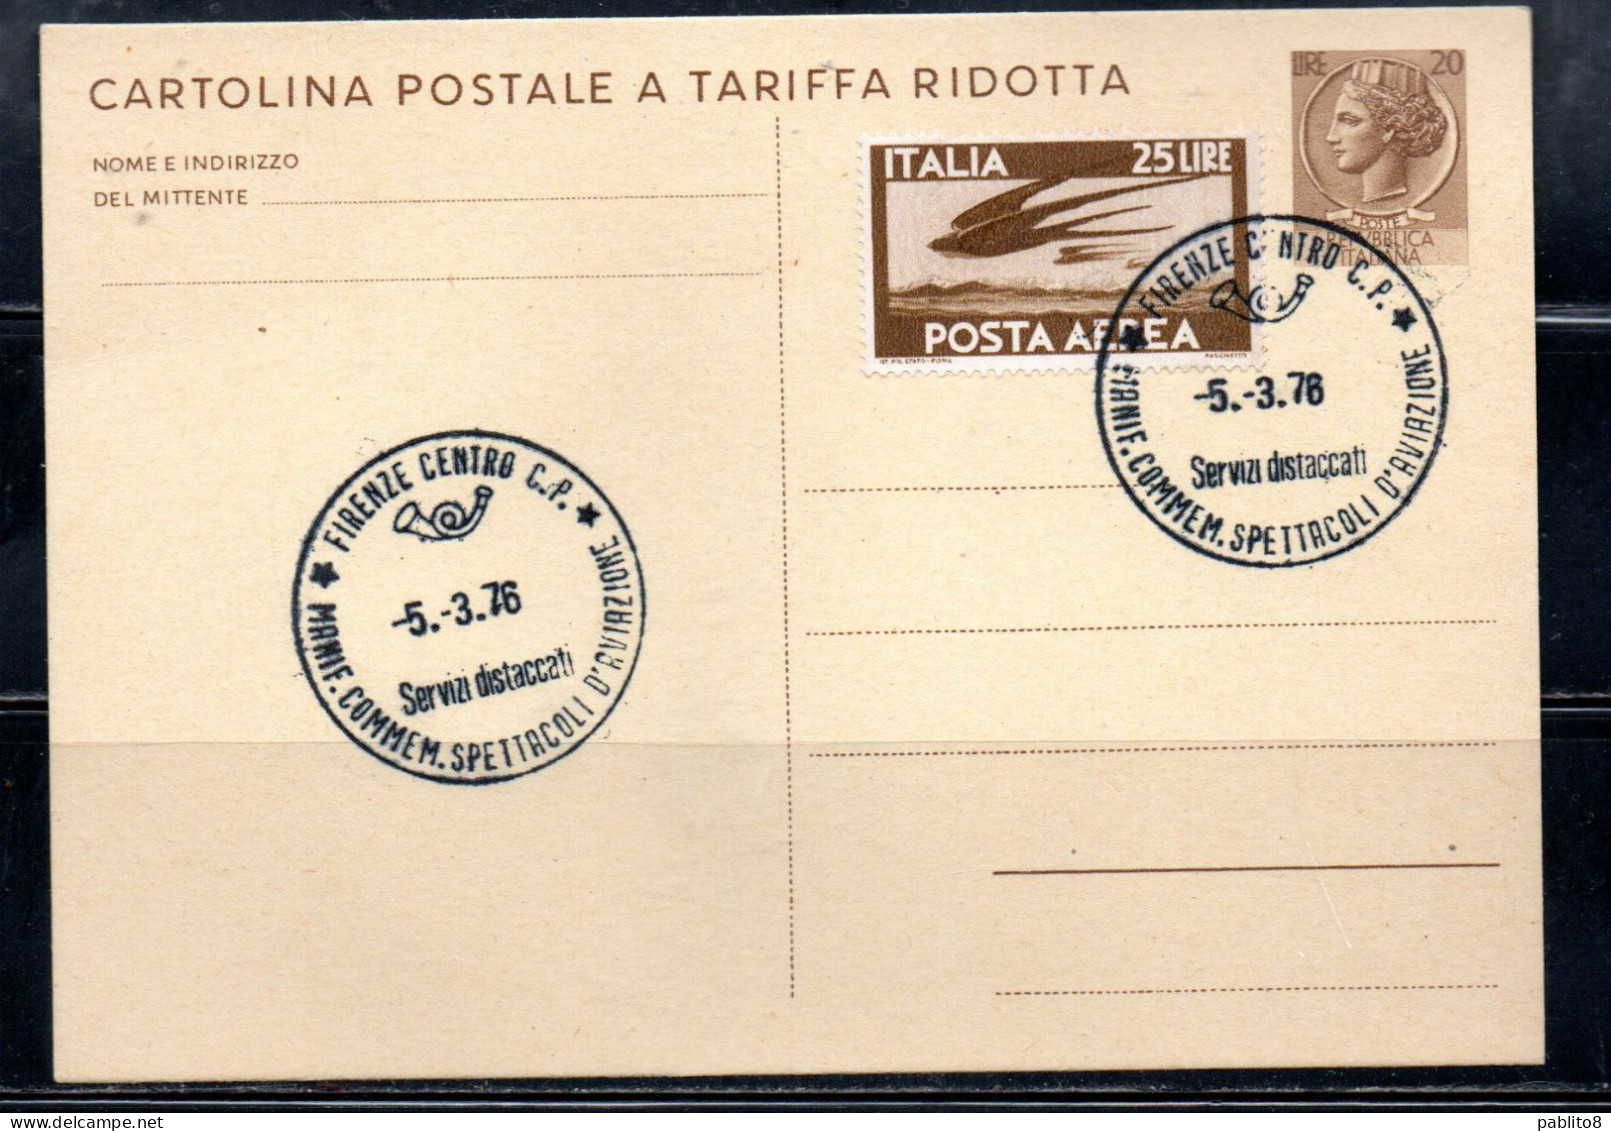 ITALIA REPUBBLICA ITALY REPUBLIC CARTOLINA POSTALE 5-3-1976 MANIFESTAZIONE COMMERCIALE SPETTACOLI DI AVIAZIONE VIAGGIATA - Interi Postali